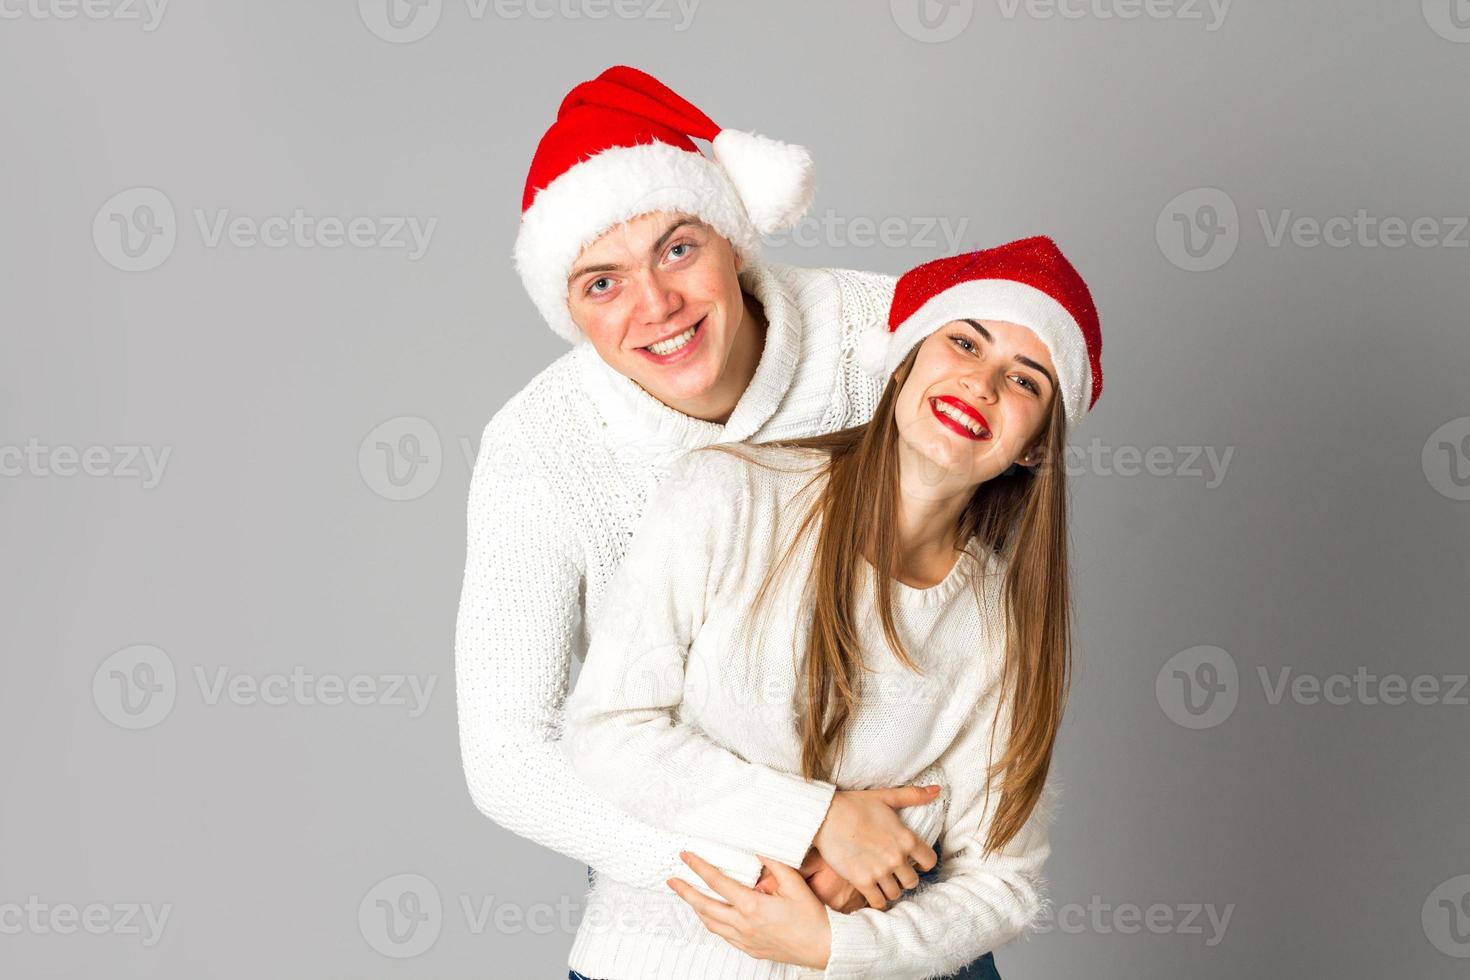 coppia celebrare Natale nel studio foto